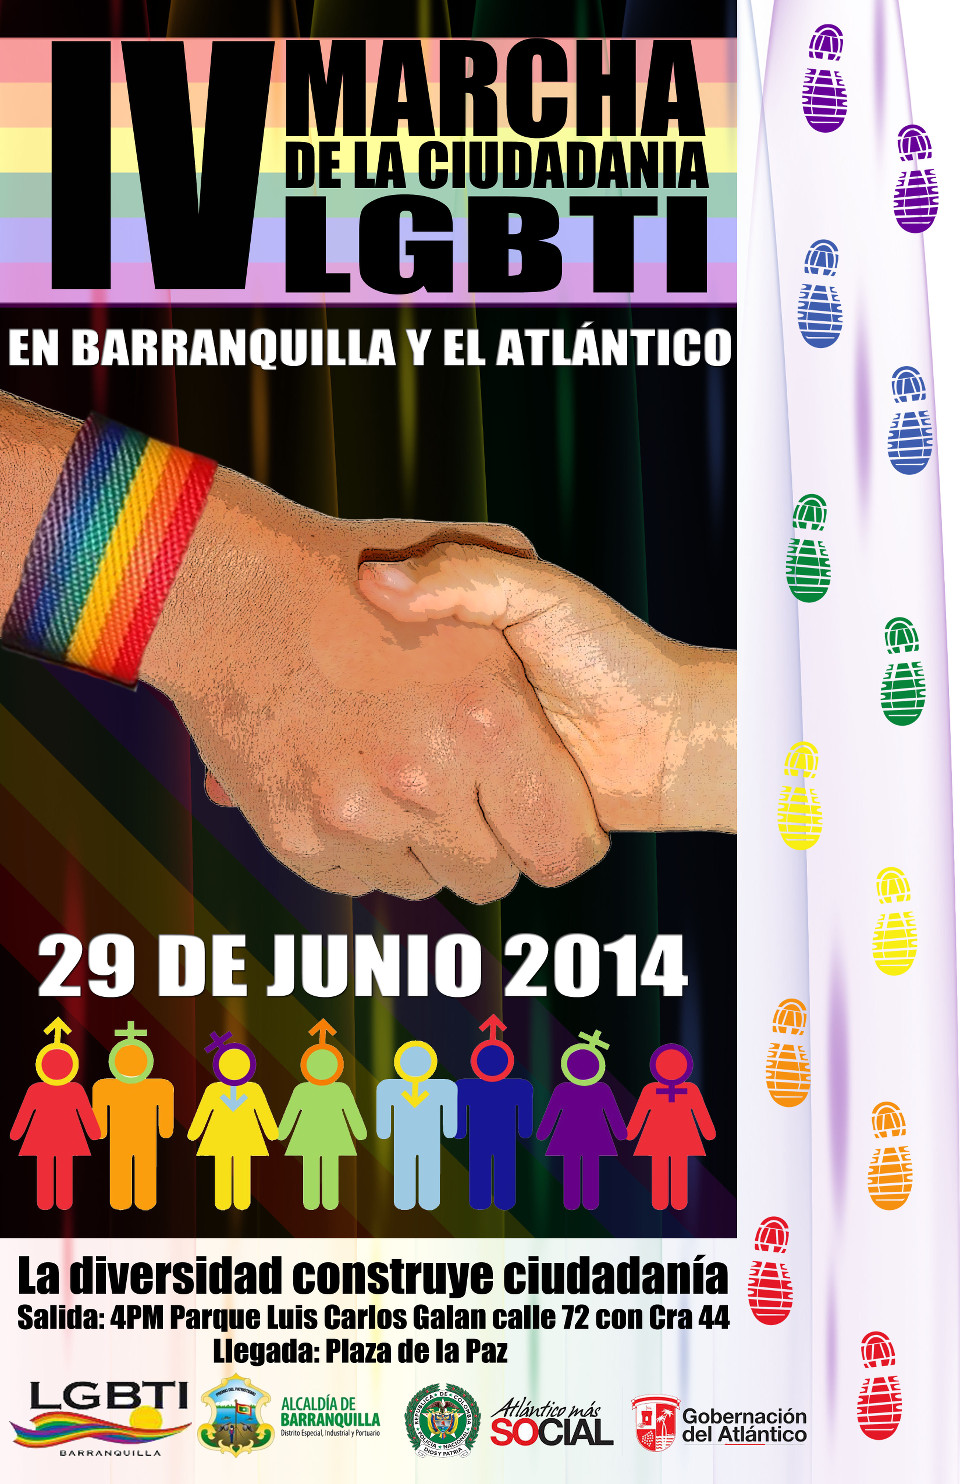 IV marcha de la ciudadanía LGBTI en Barranquilla y el Atlántico - 29 de Junio 2014 - La diversidad construye ciudadanía - Salida: 4 P.M. Parque Luis Carlos Galan calle 72 con carrera 44 - Llegada: Plaza de la Paz